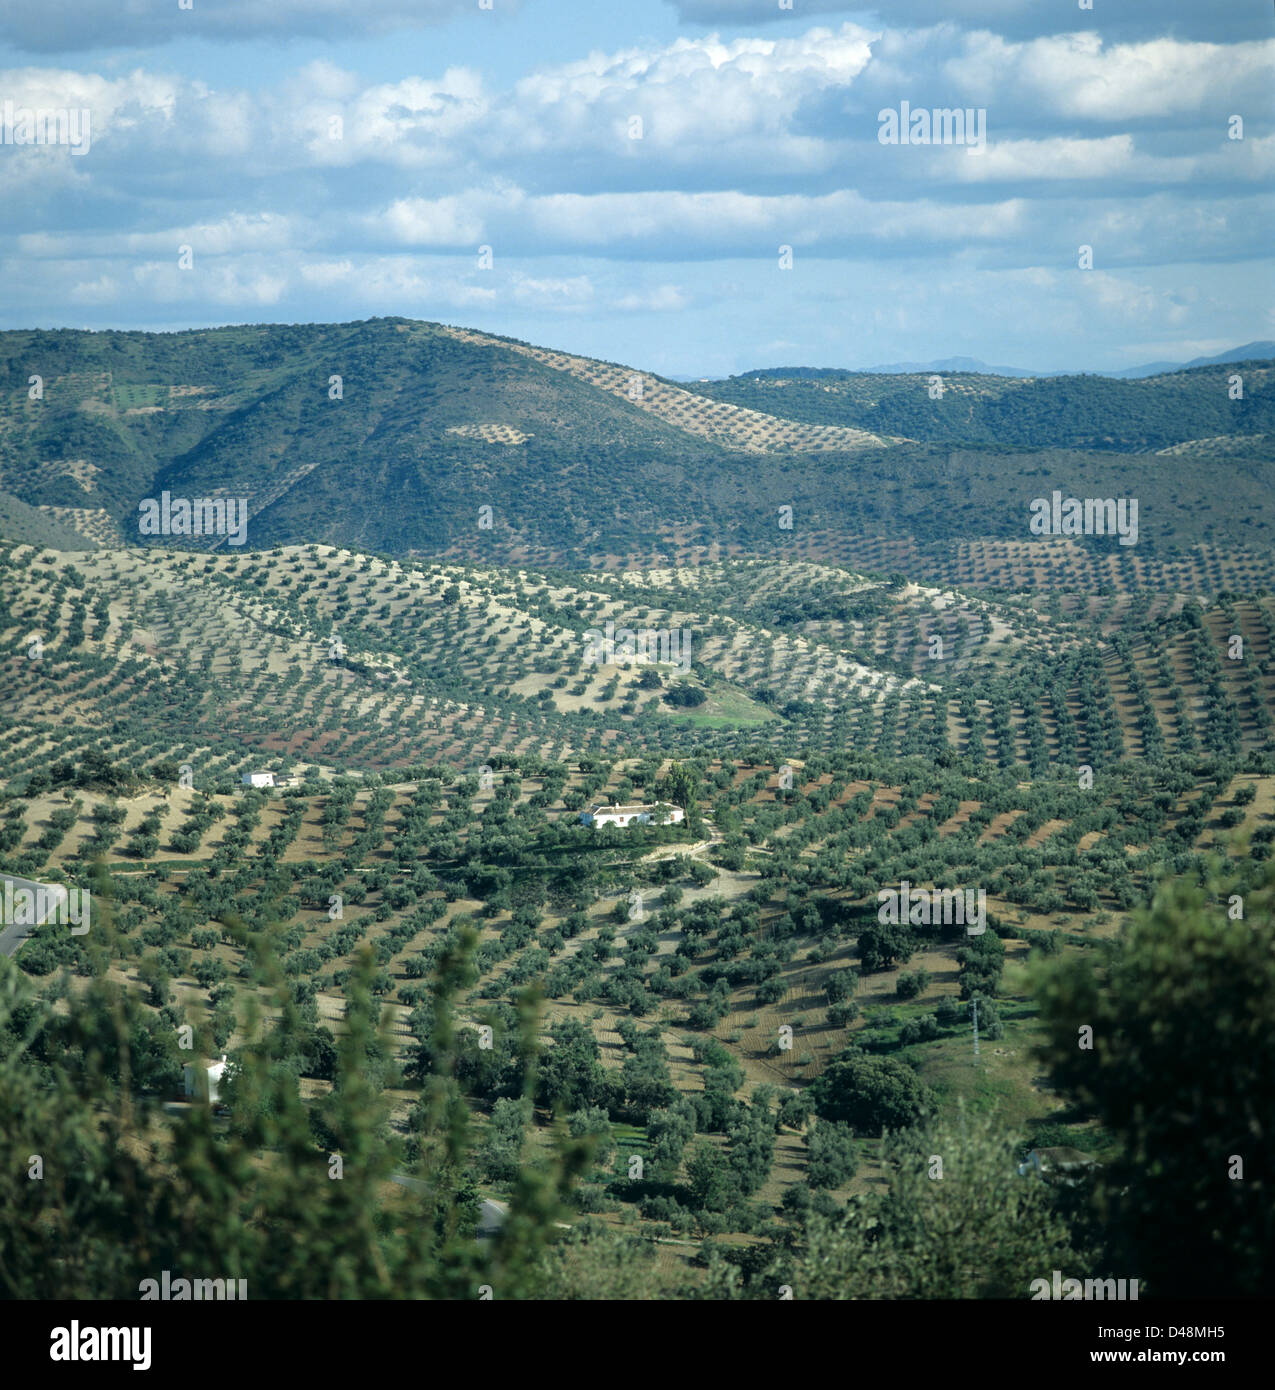 Vue exceptionnelle sur collines avec des rangées d'oliviers dans les terres agricoles en Andalousie, Espagne Banque D'Images